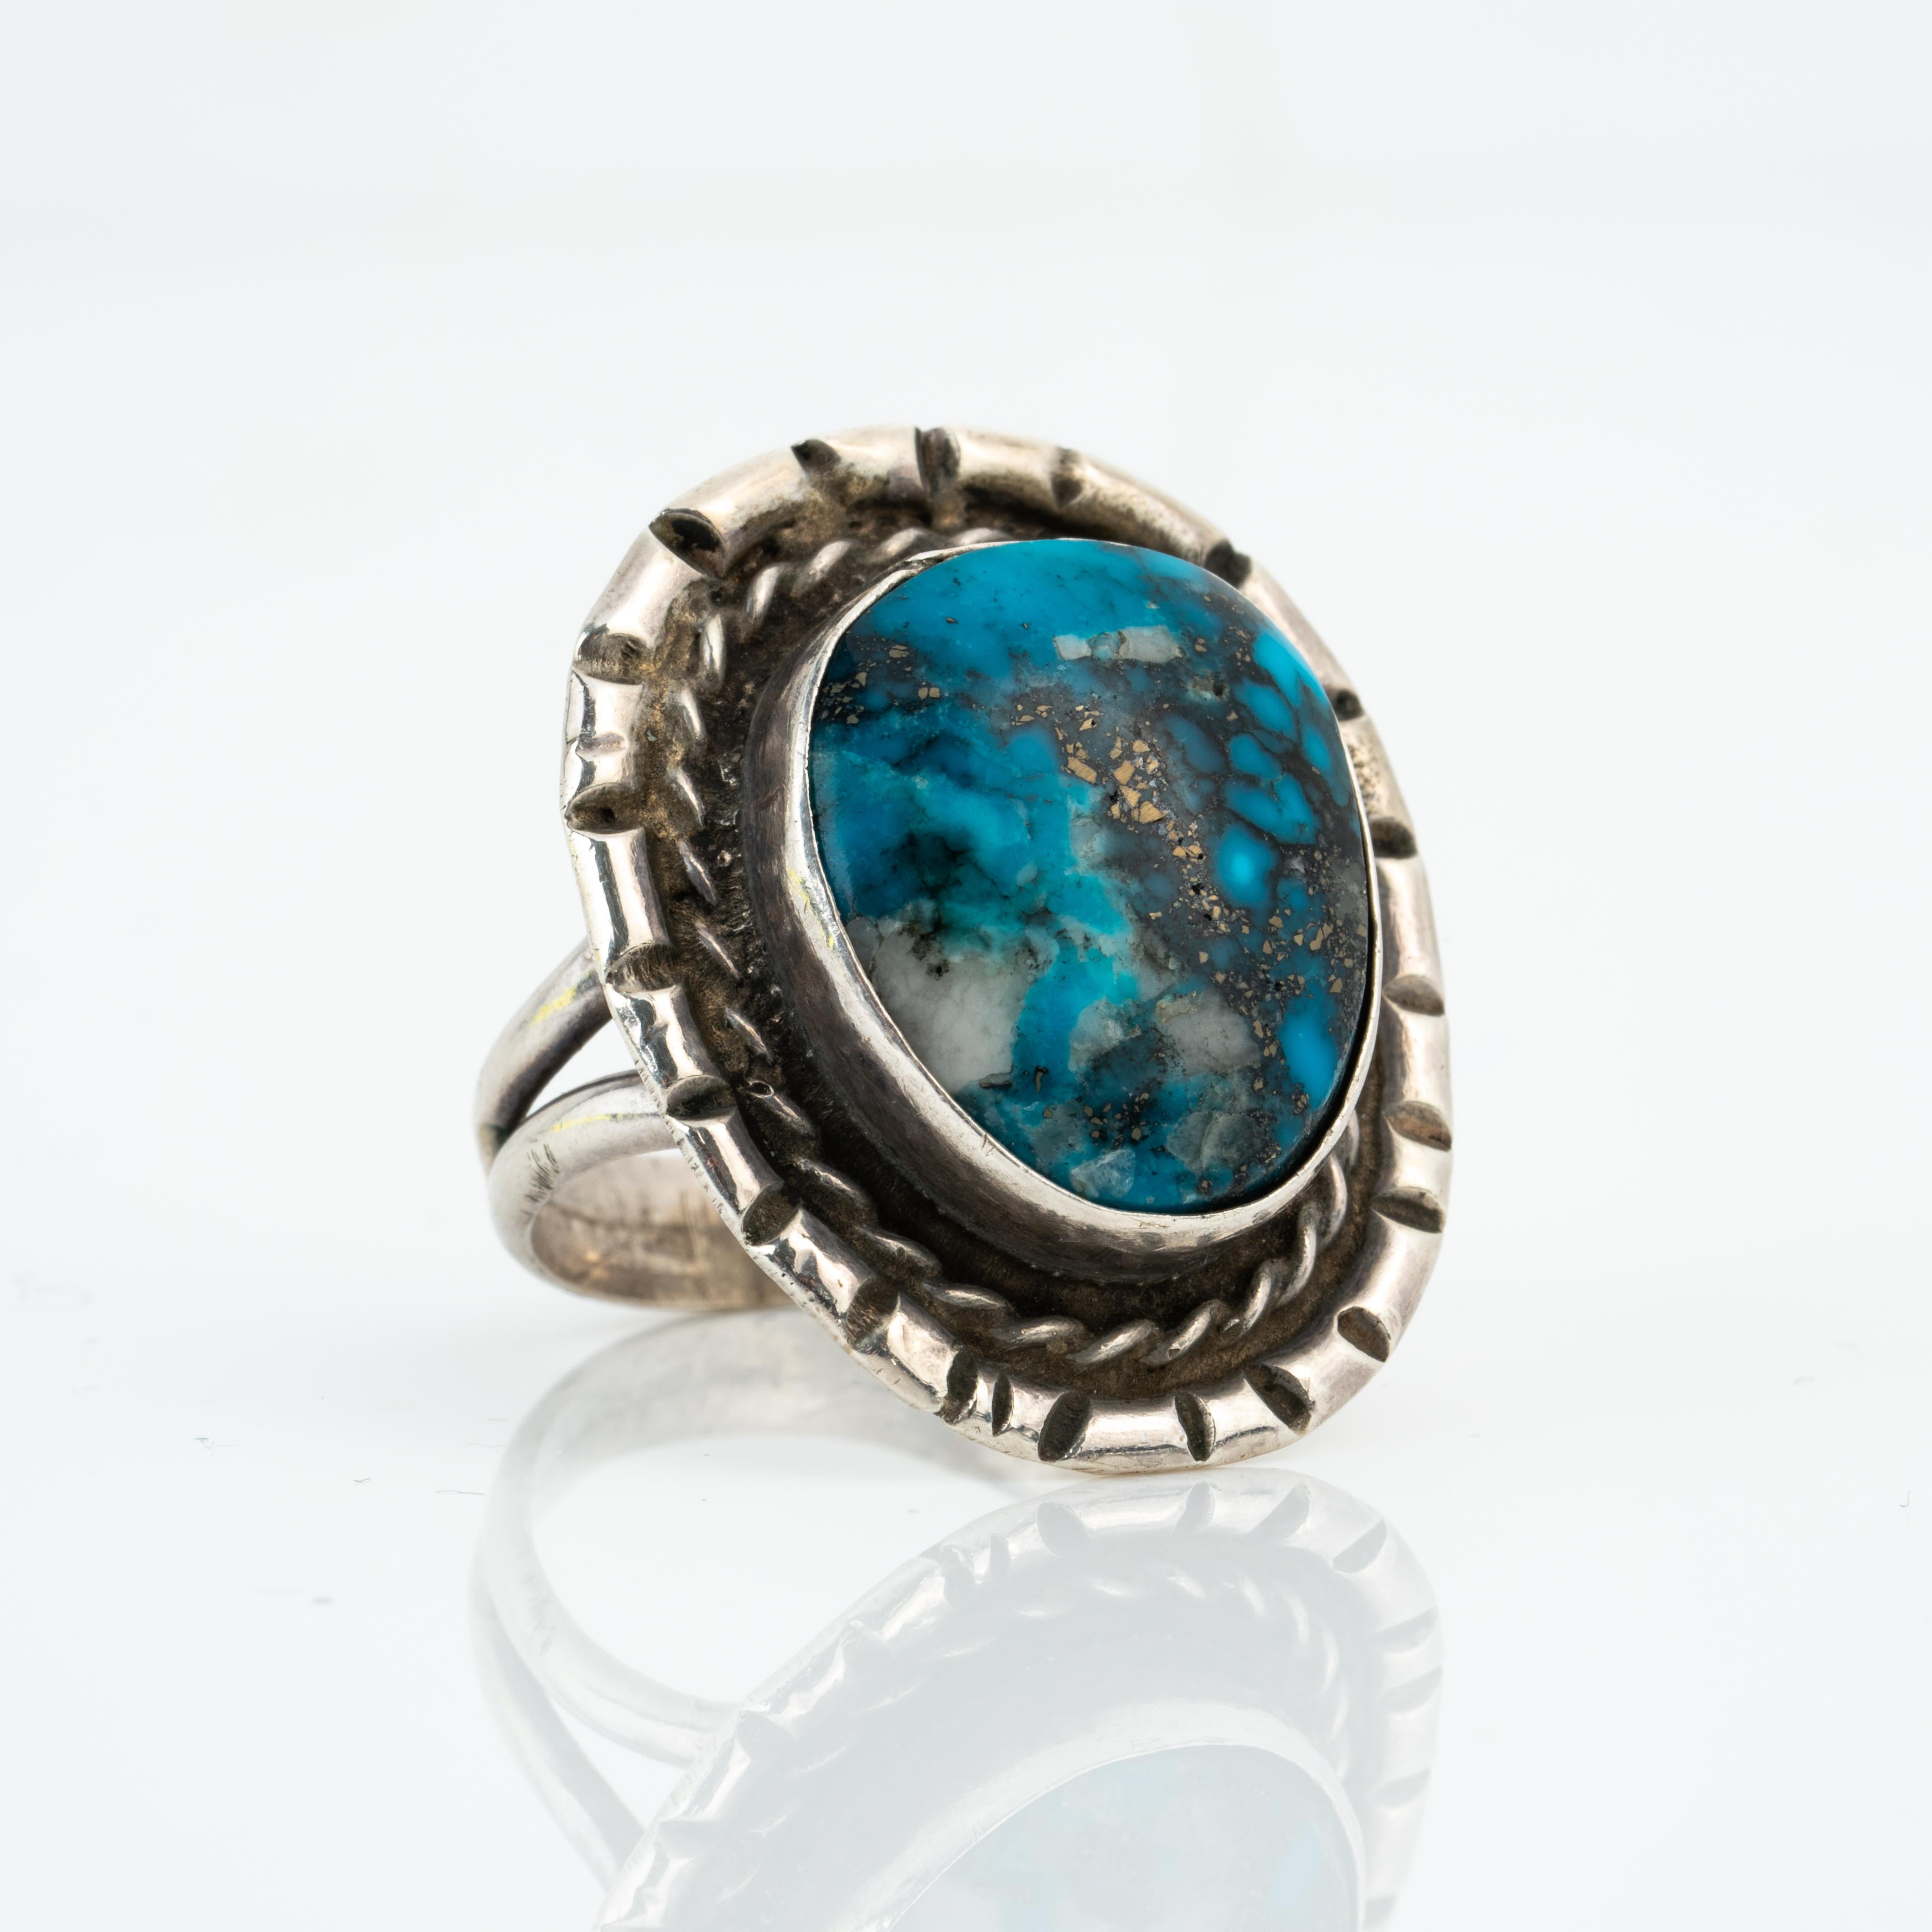 Vintage Navajo Silber und Apache Blue Türkis Ring
Ein wundervoller handgefertigter Navajo-Ring aus den 1970er Jahren - handgravierte Seildetails umgeben einen wunderschönen Apache Blue-Türkis.
Größe 7, 7.25
8.47 Gramm
Abmessungen oben am